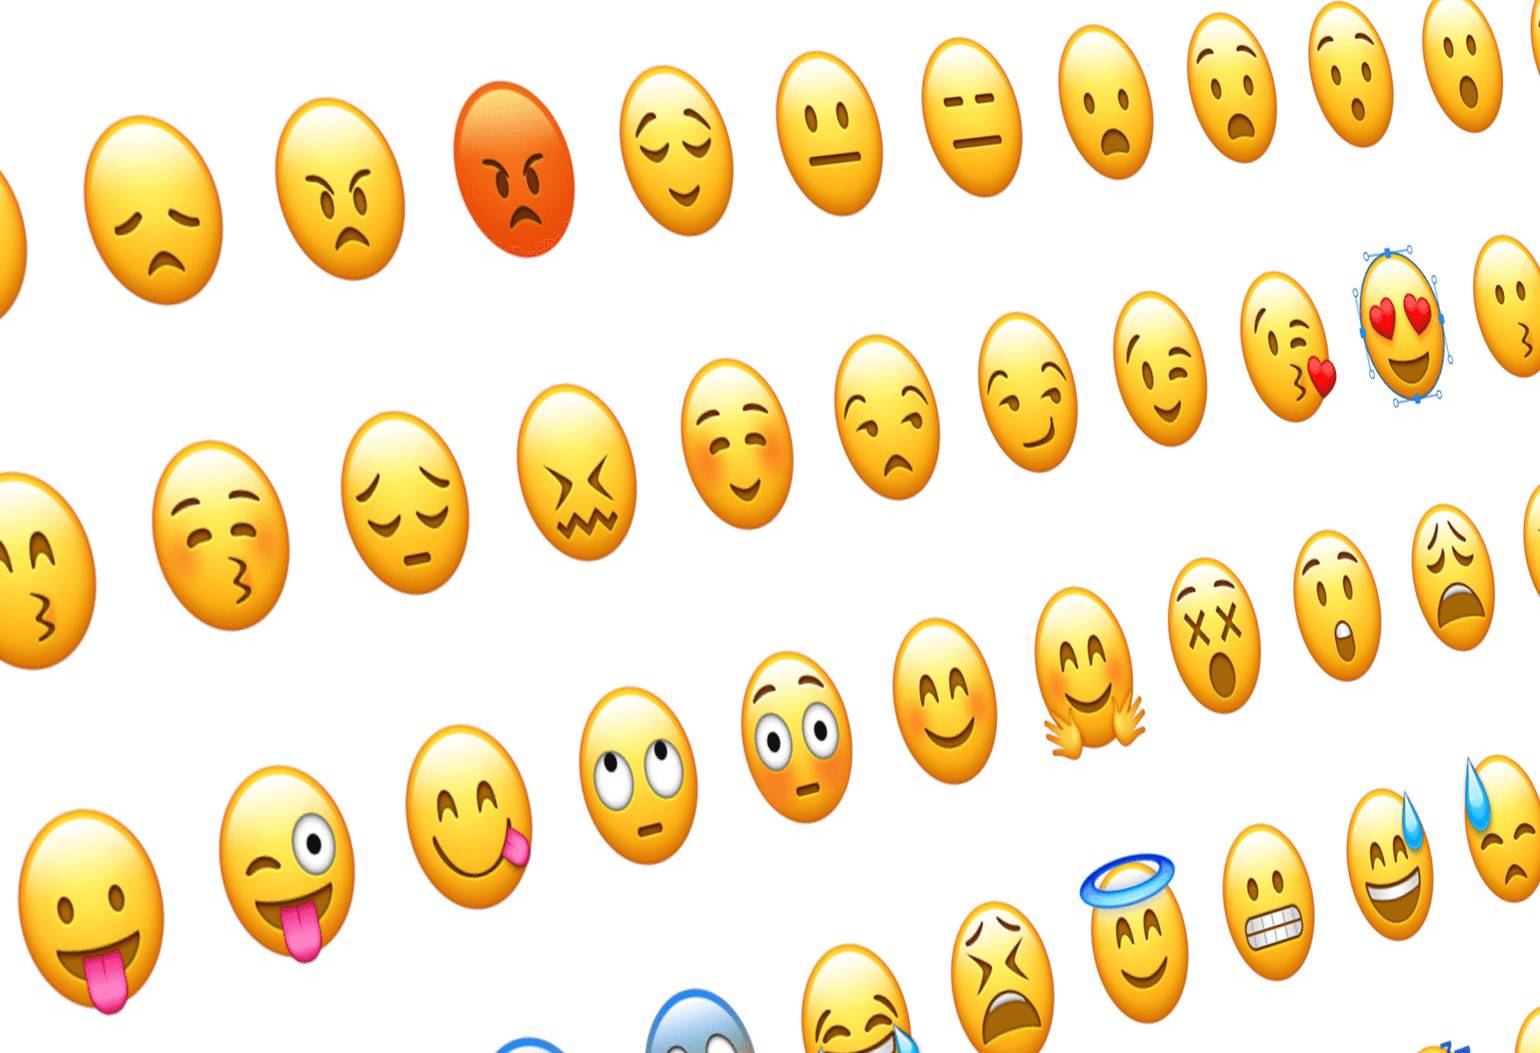 217 adet yeni emoji tanıtıldı